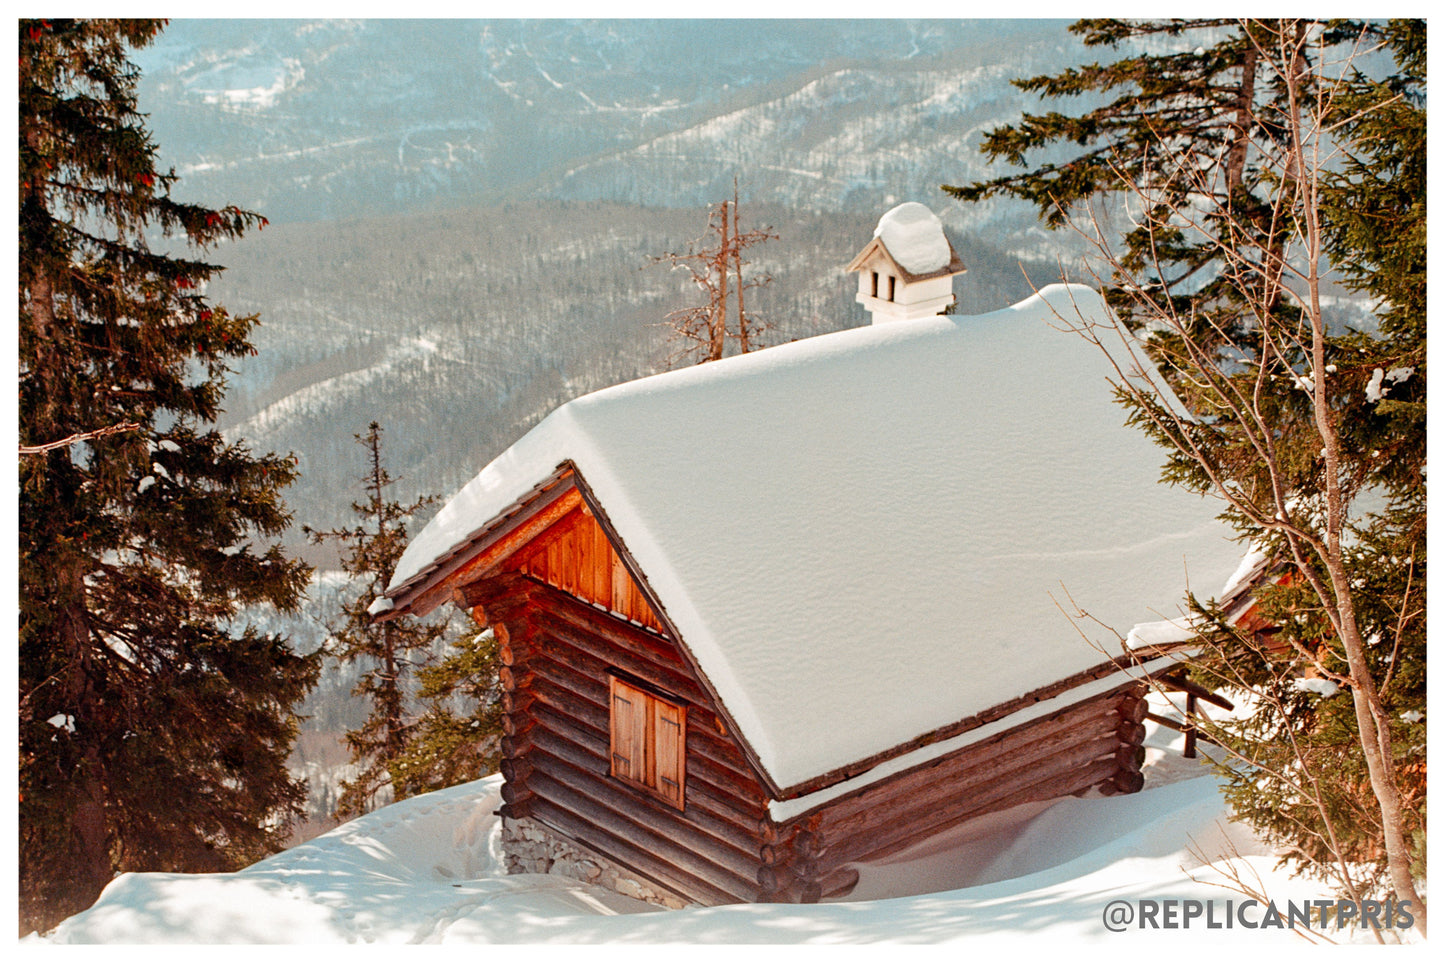 Kodak 35mm Ektar 100 snowy cabin photo by replicantpris